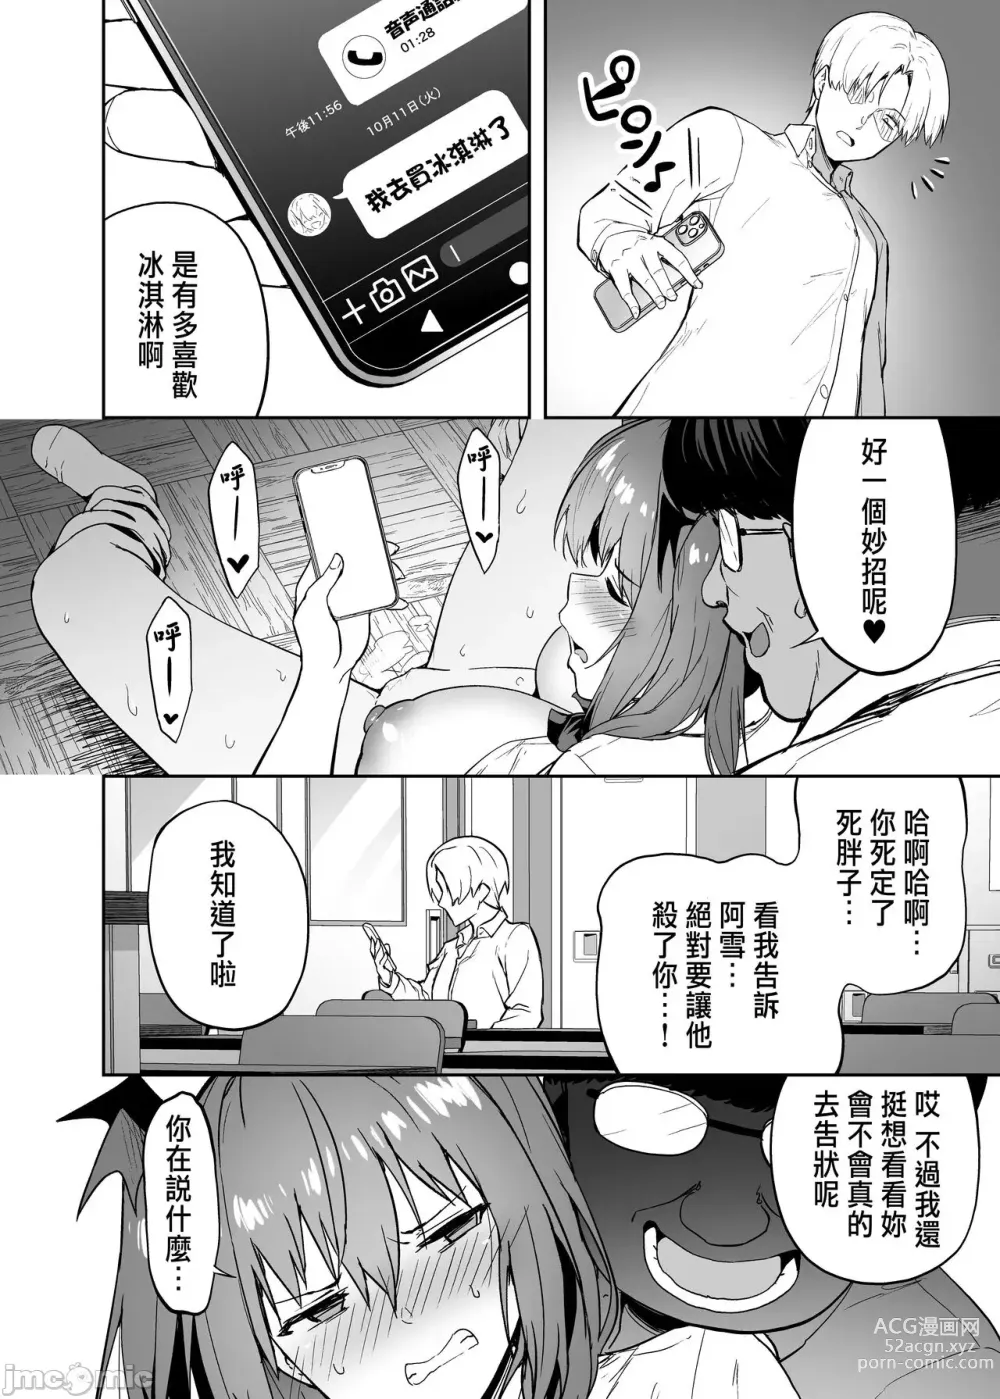 Page 33 of manga 把囂張狂妄的辣妹變成魅魔來懲罰1+1.5+2